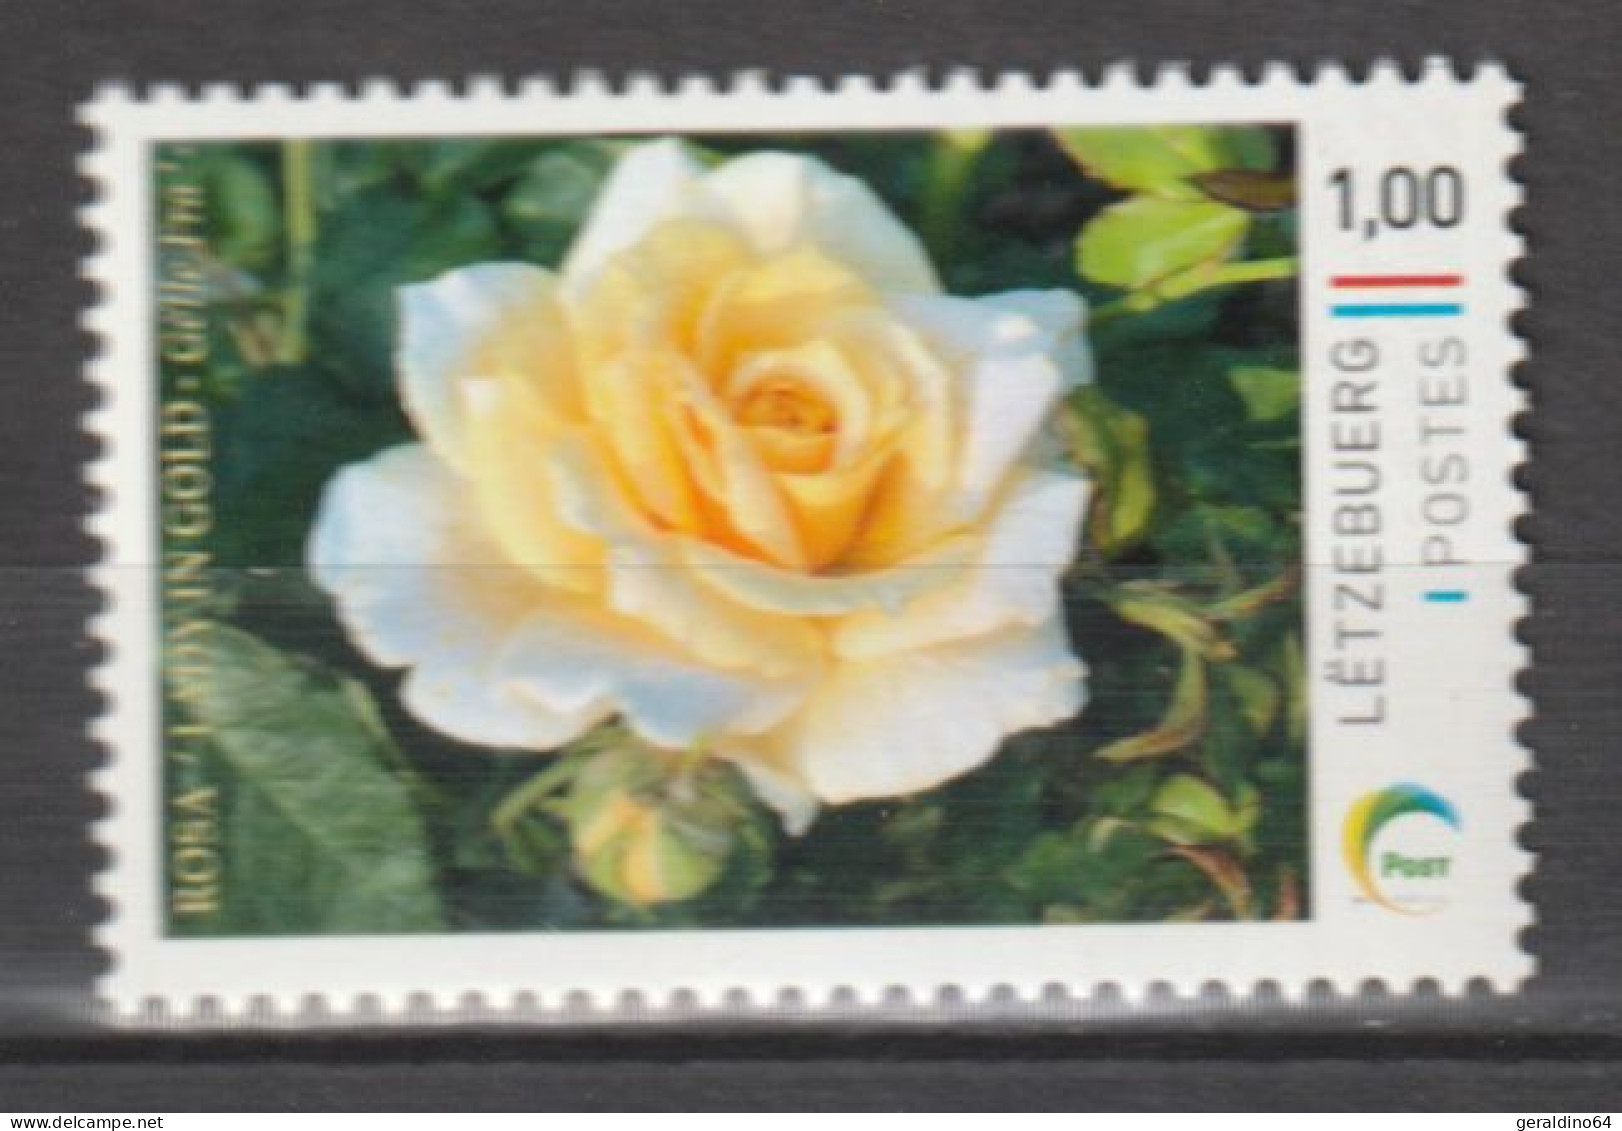 Luxemburg 2023 Personalisierte Briefmarke Rose Lady In Gold ** Postfrisch MNH - Nuovi